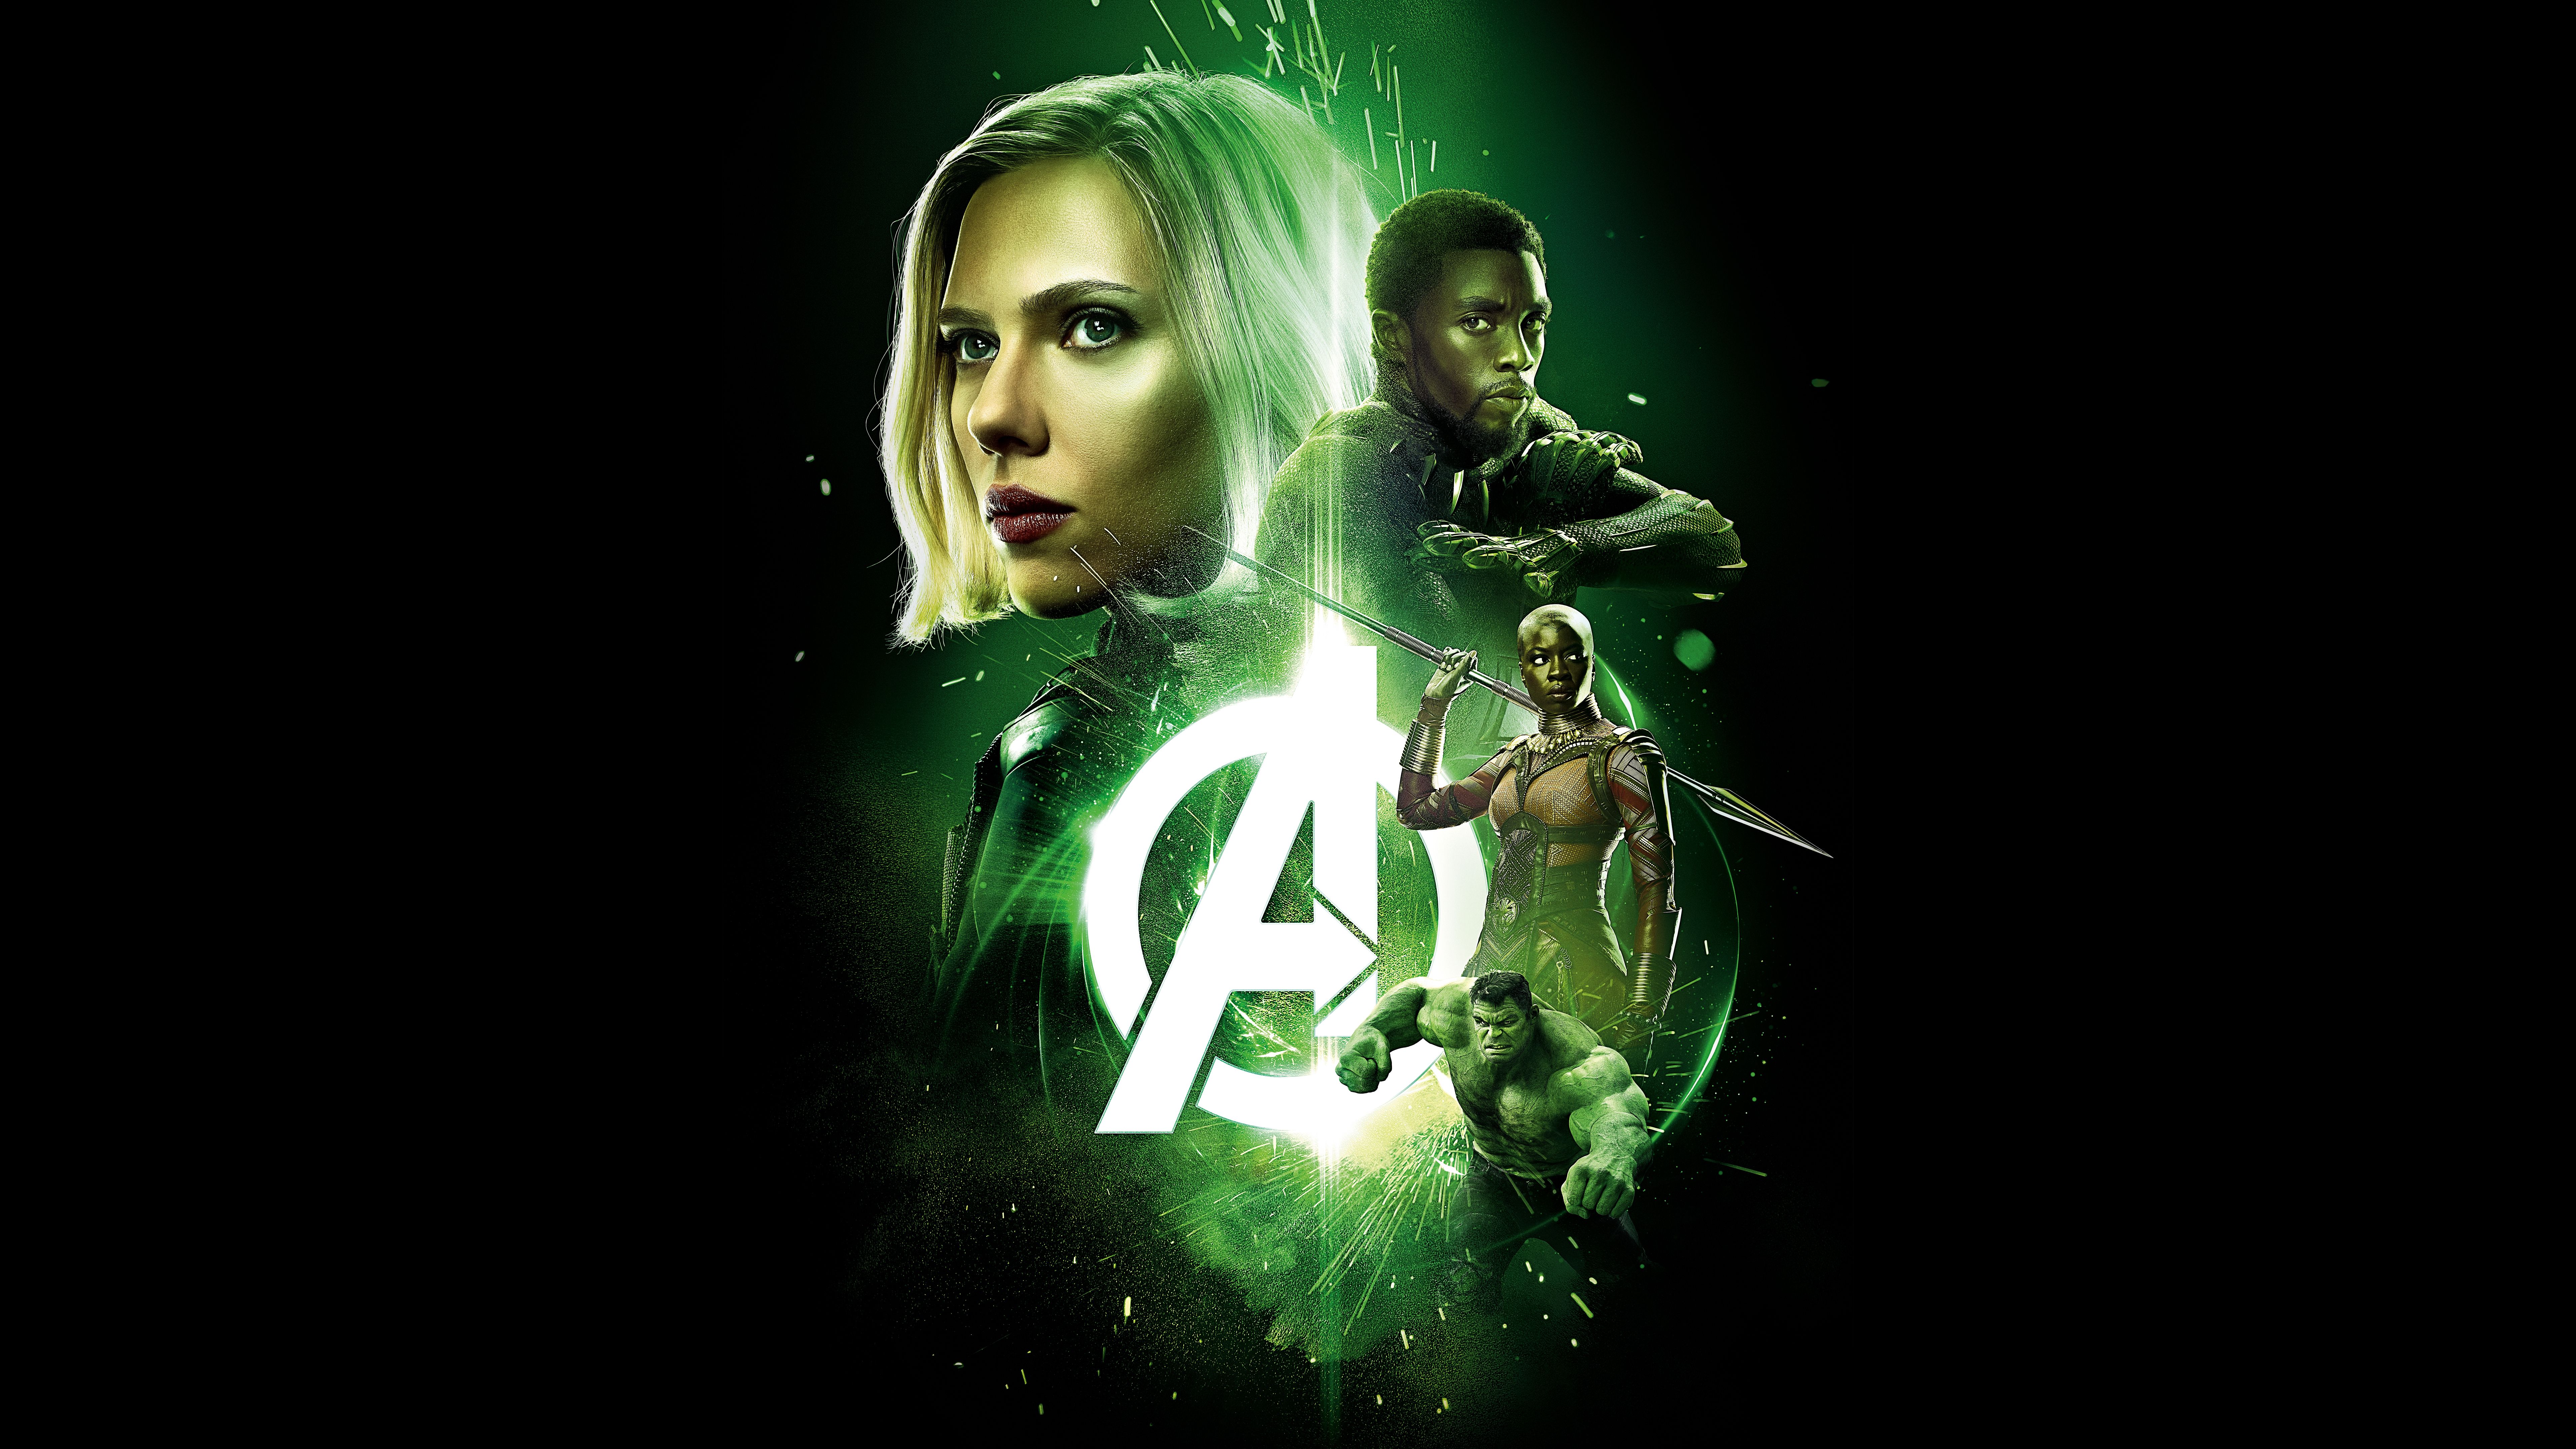 Wallpaper Avengers: Infinity War, Scarlett Johansson, Mark Ruffalo, Black/ Dark,. Wallpaper for iPhone, Android, Mobile and Desktop